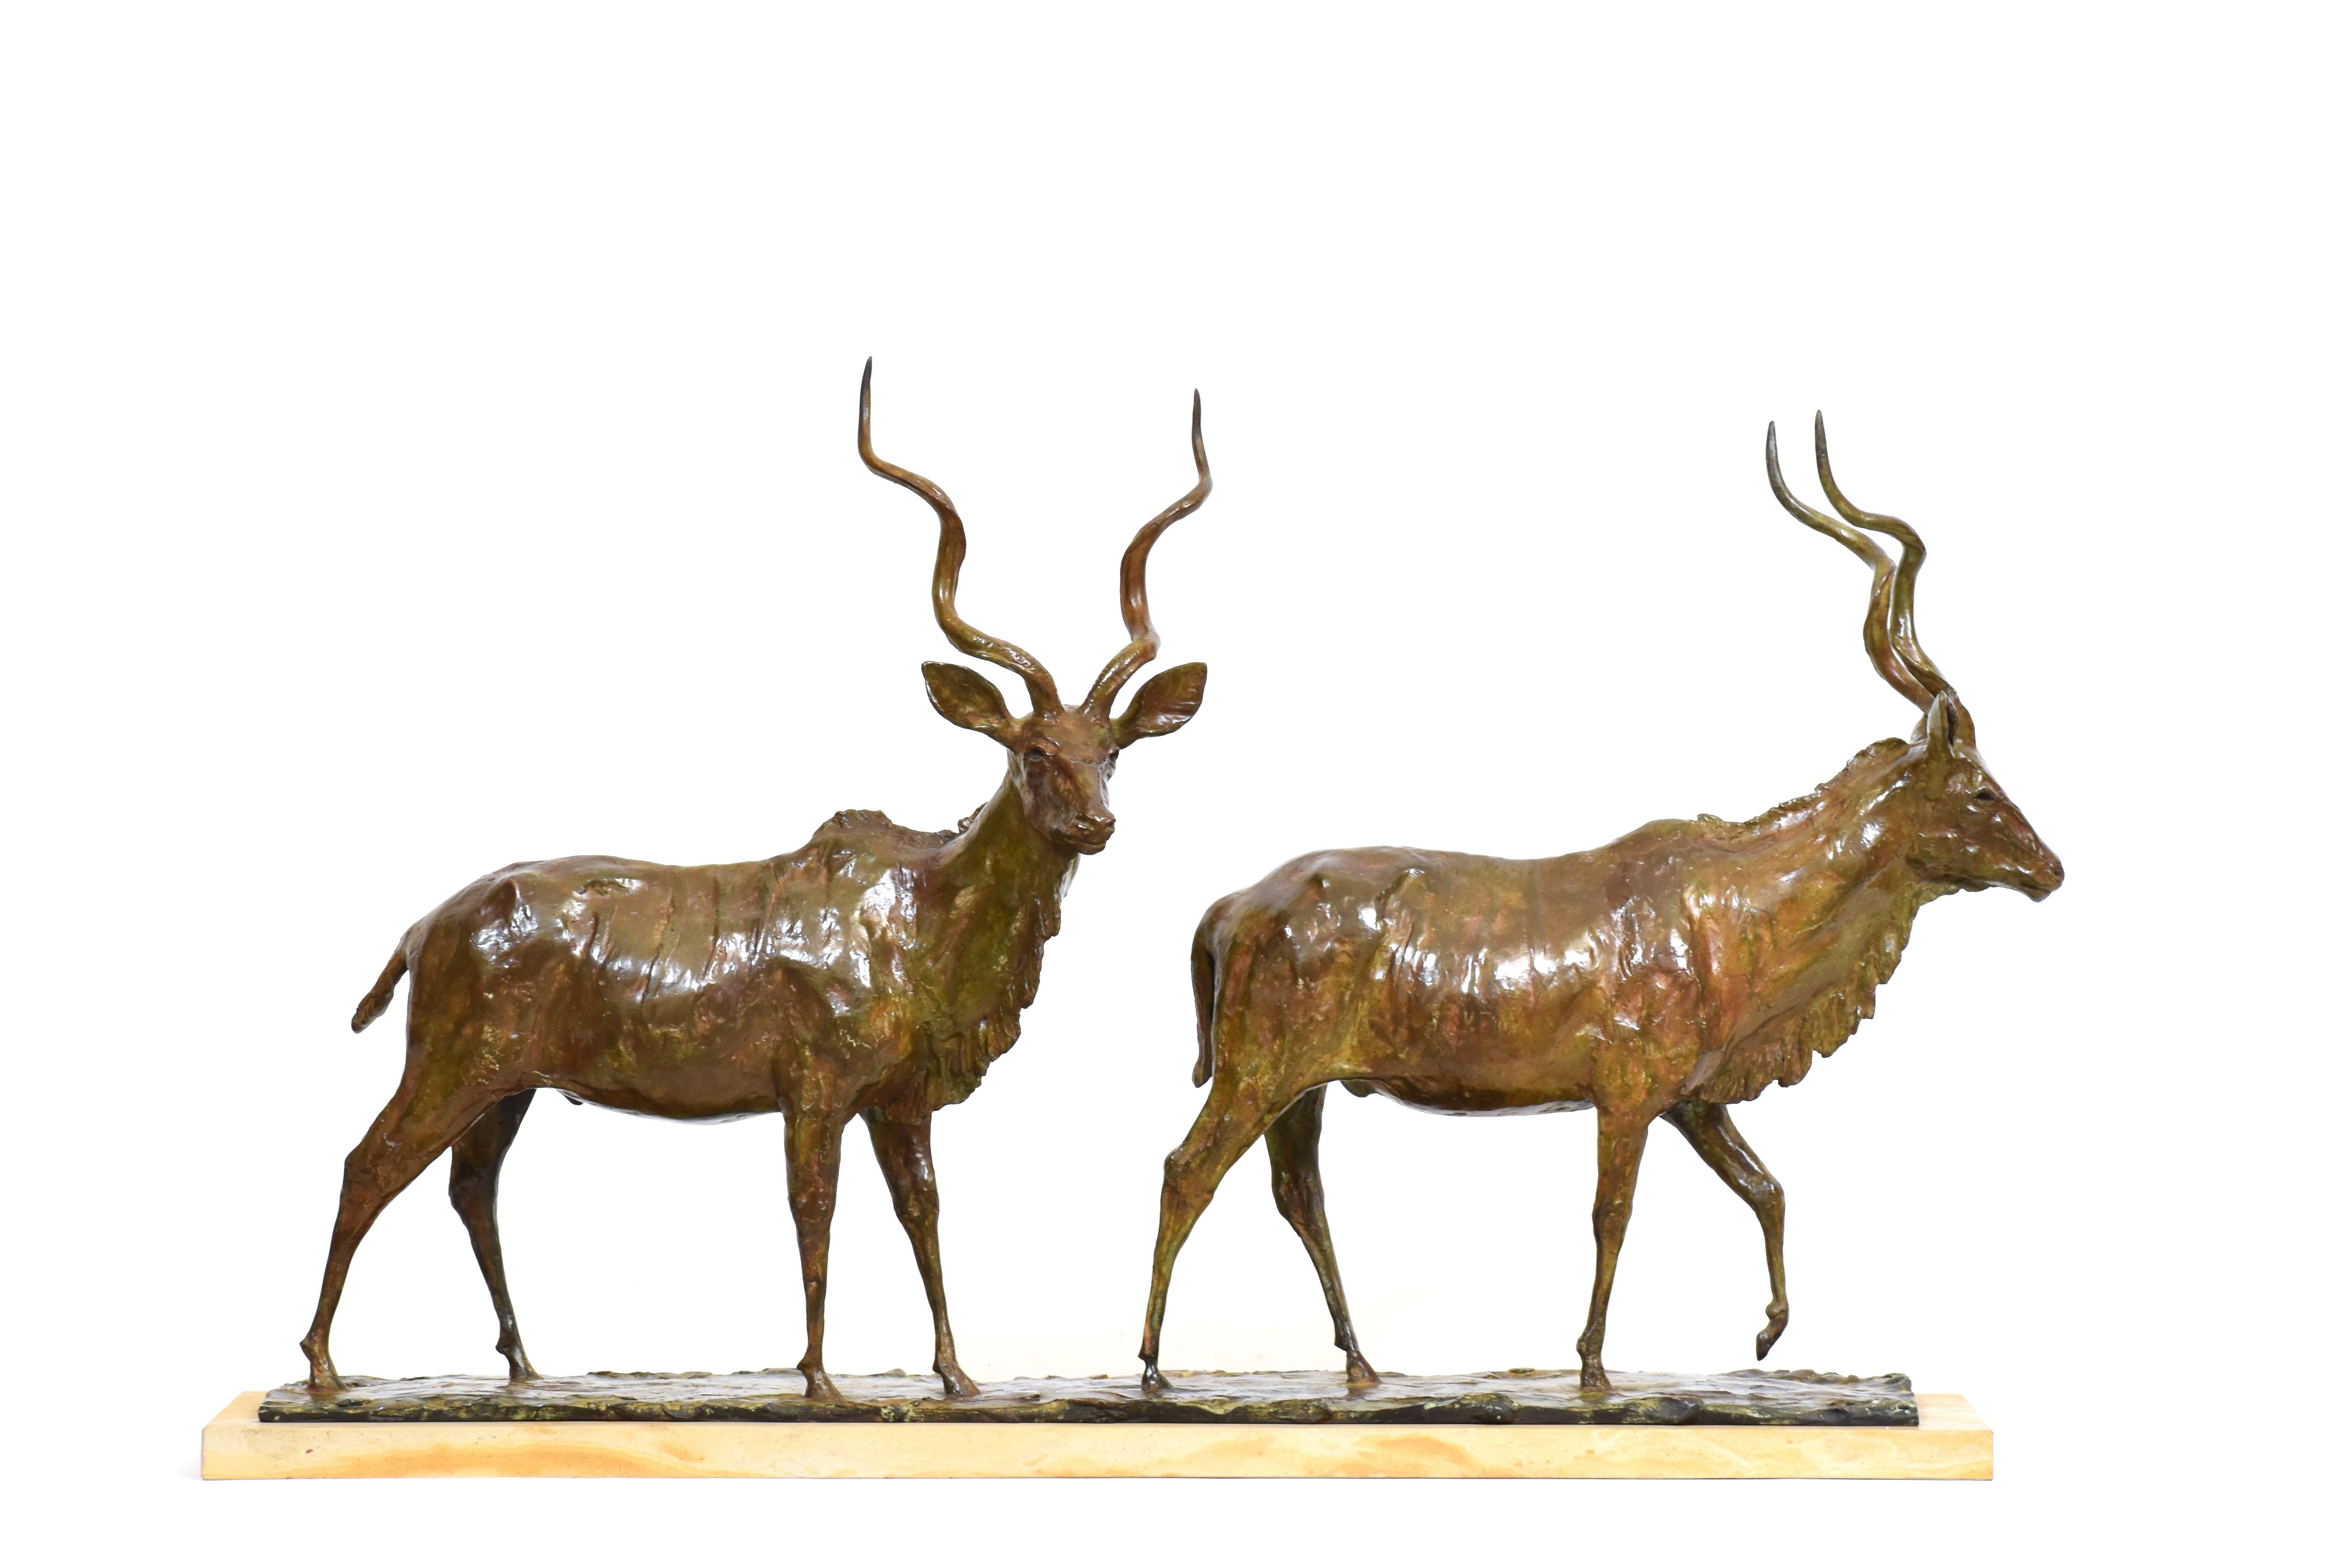 Heinrich Filter Figurative Sculpture - Going to the River - Bronze Kudu Bulls - African Antelope Bronze Sculpture 